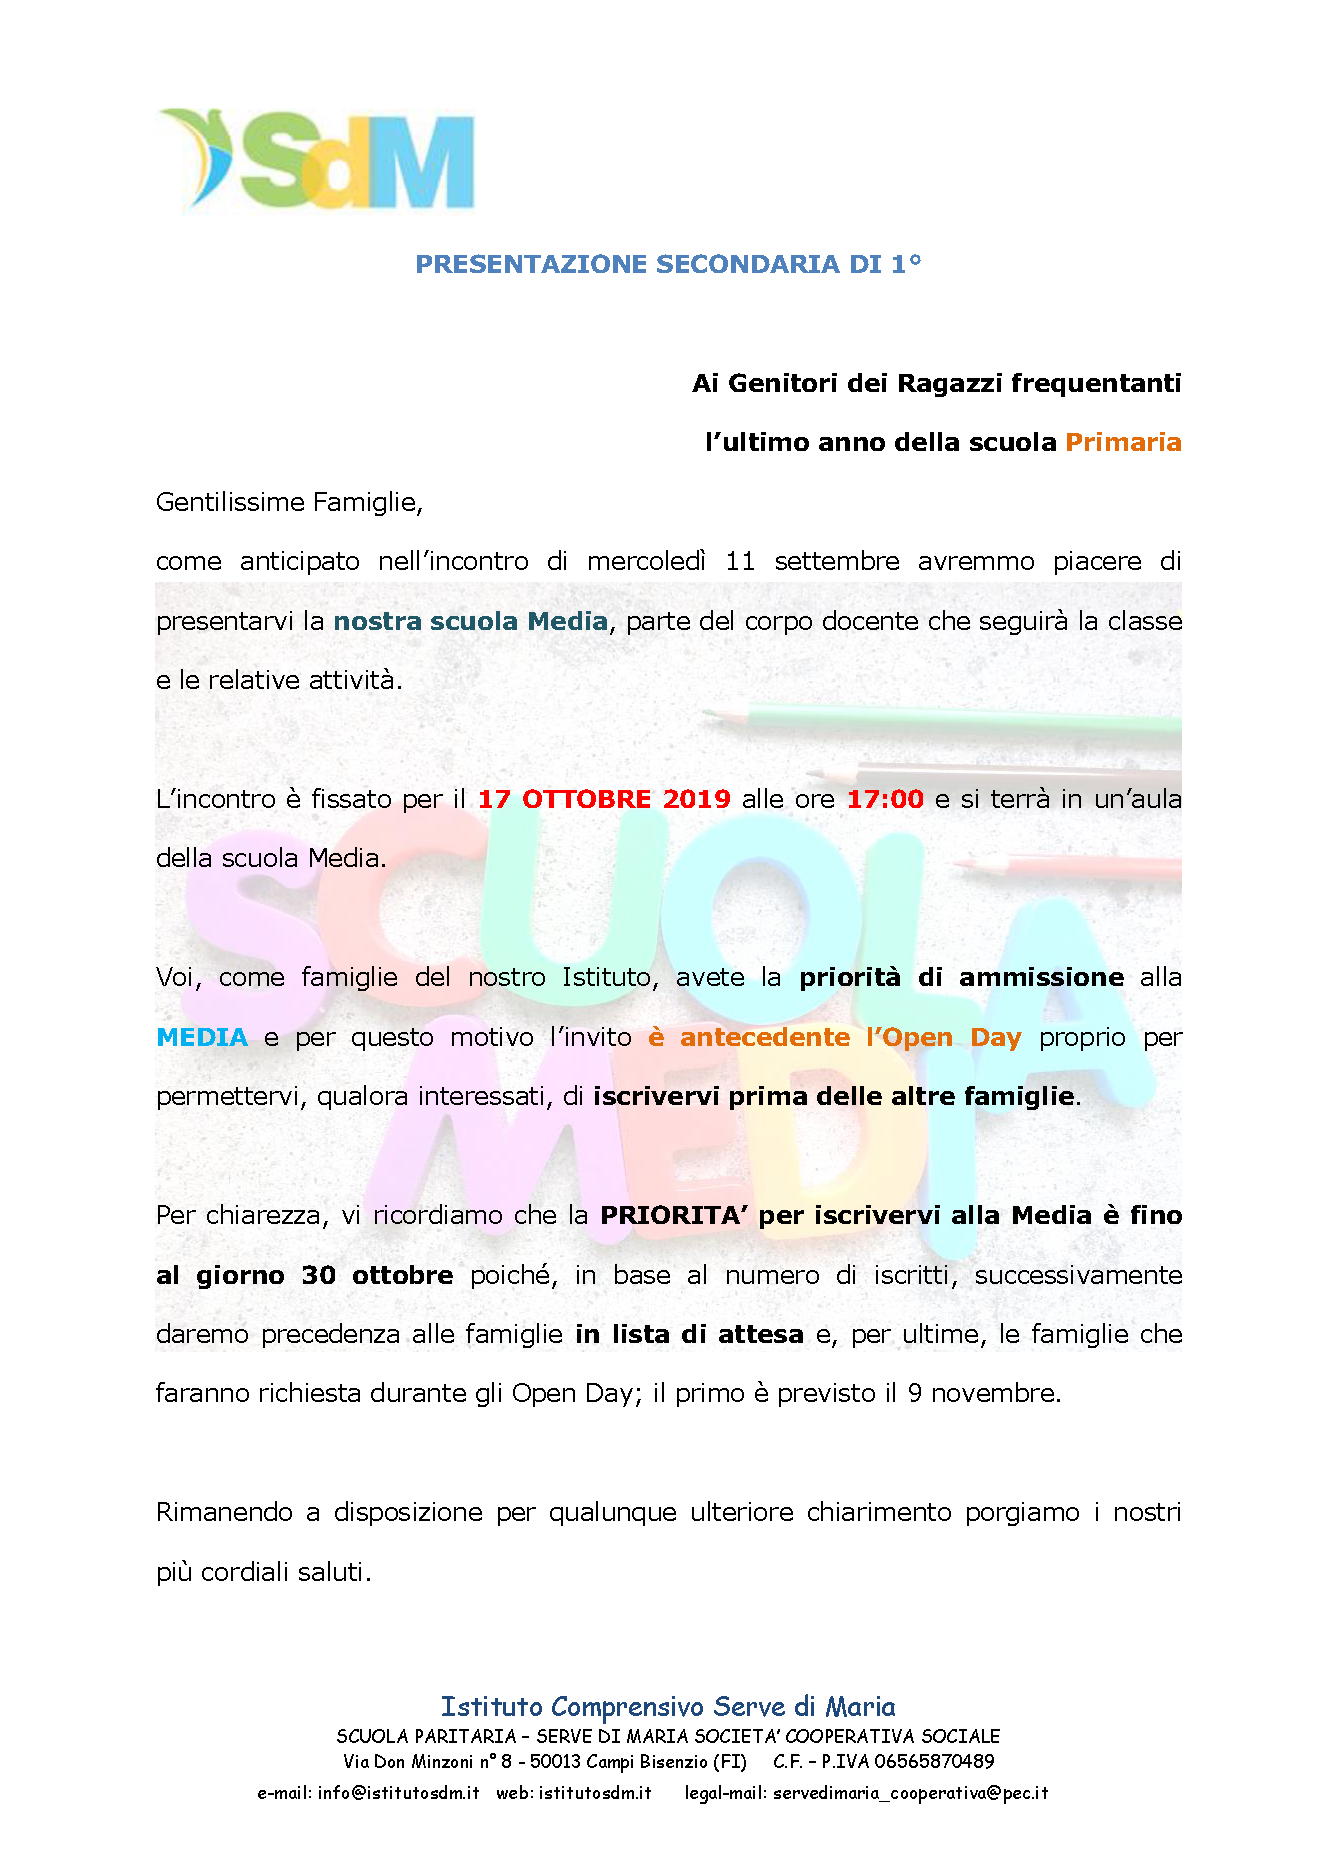 SDM_lettera_di_presentazione_media_verso_primaria_rev7ott19.png